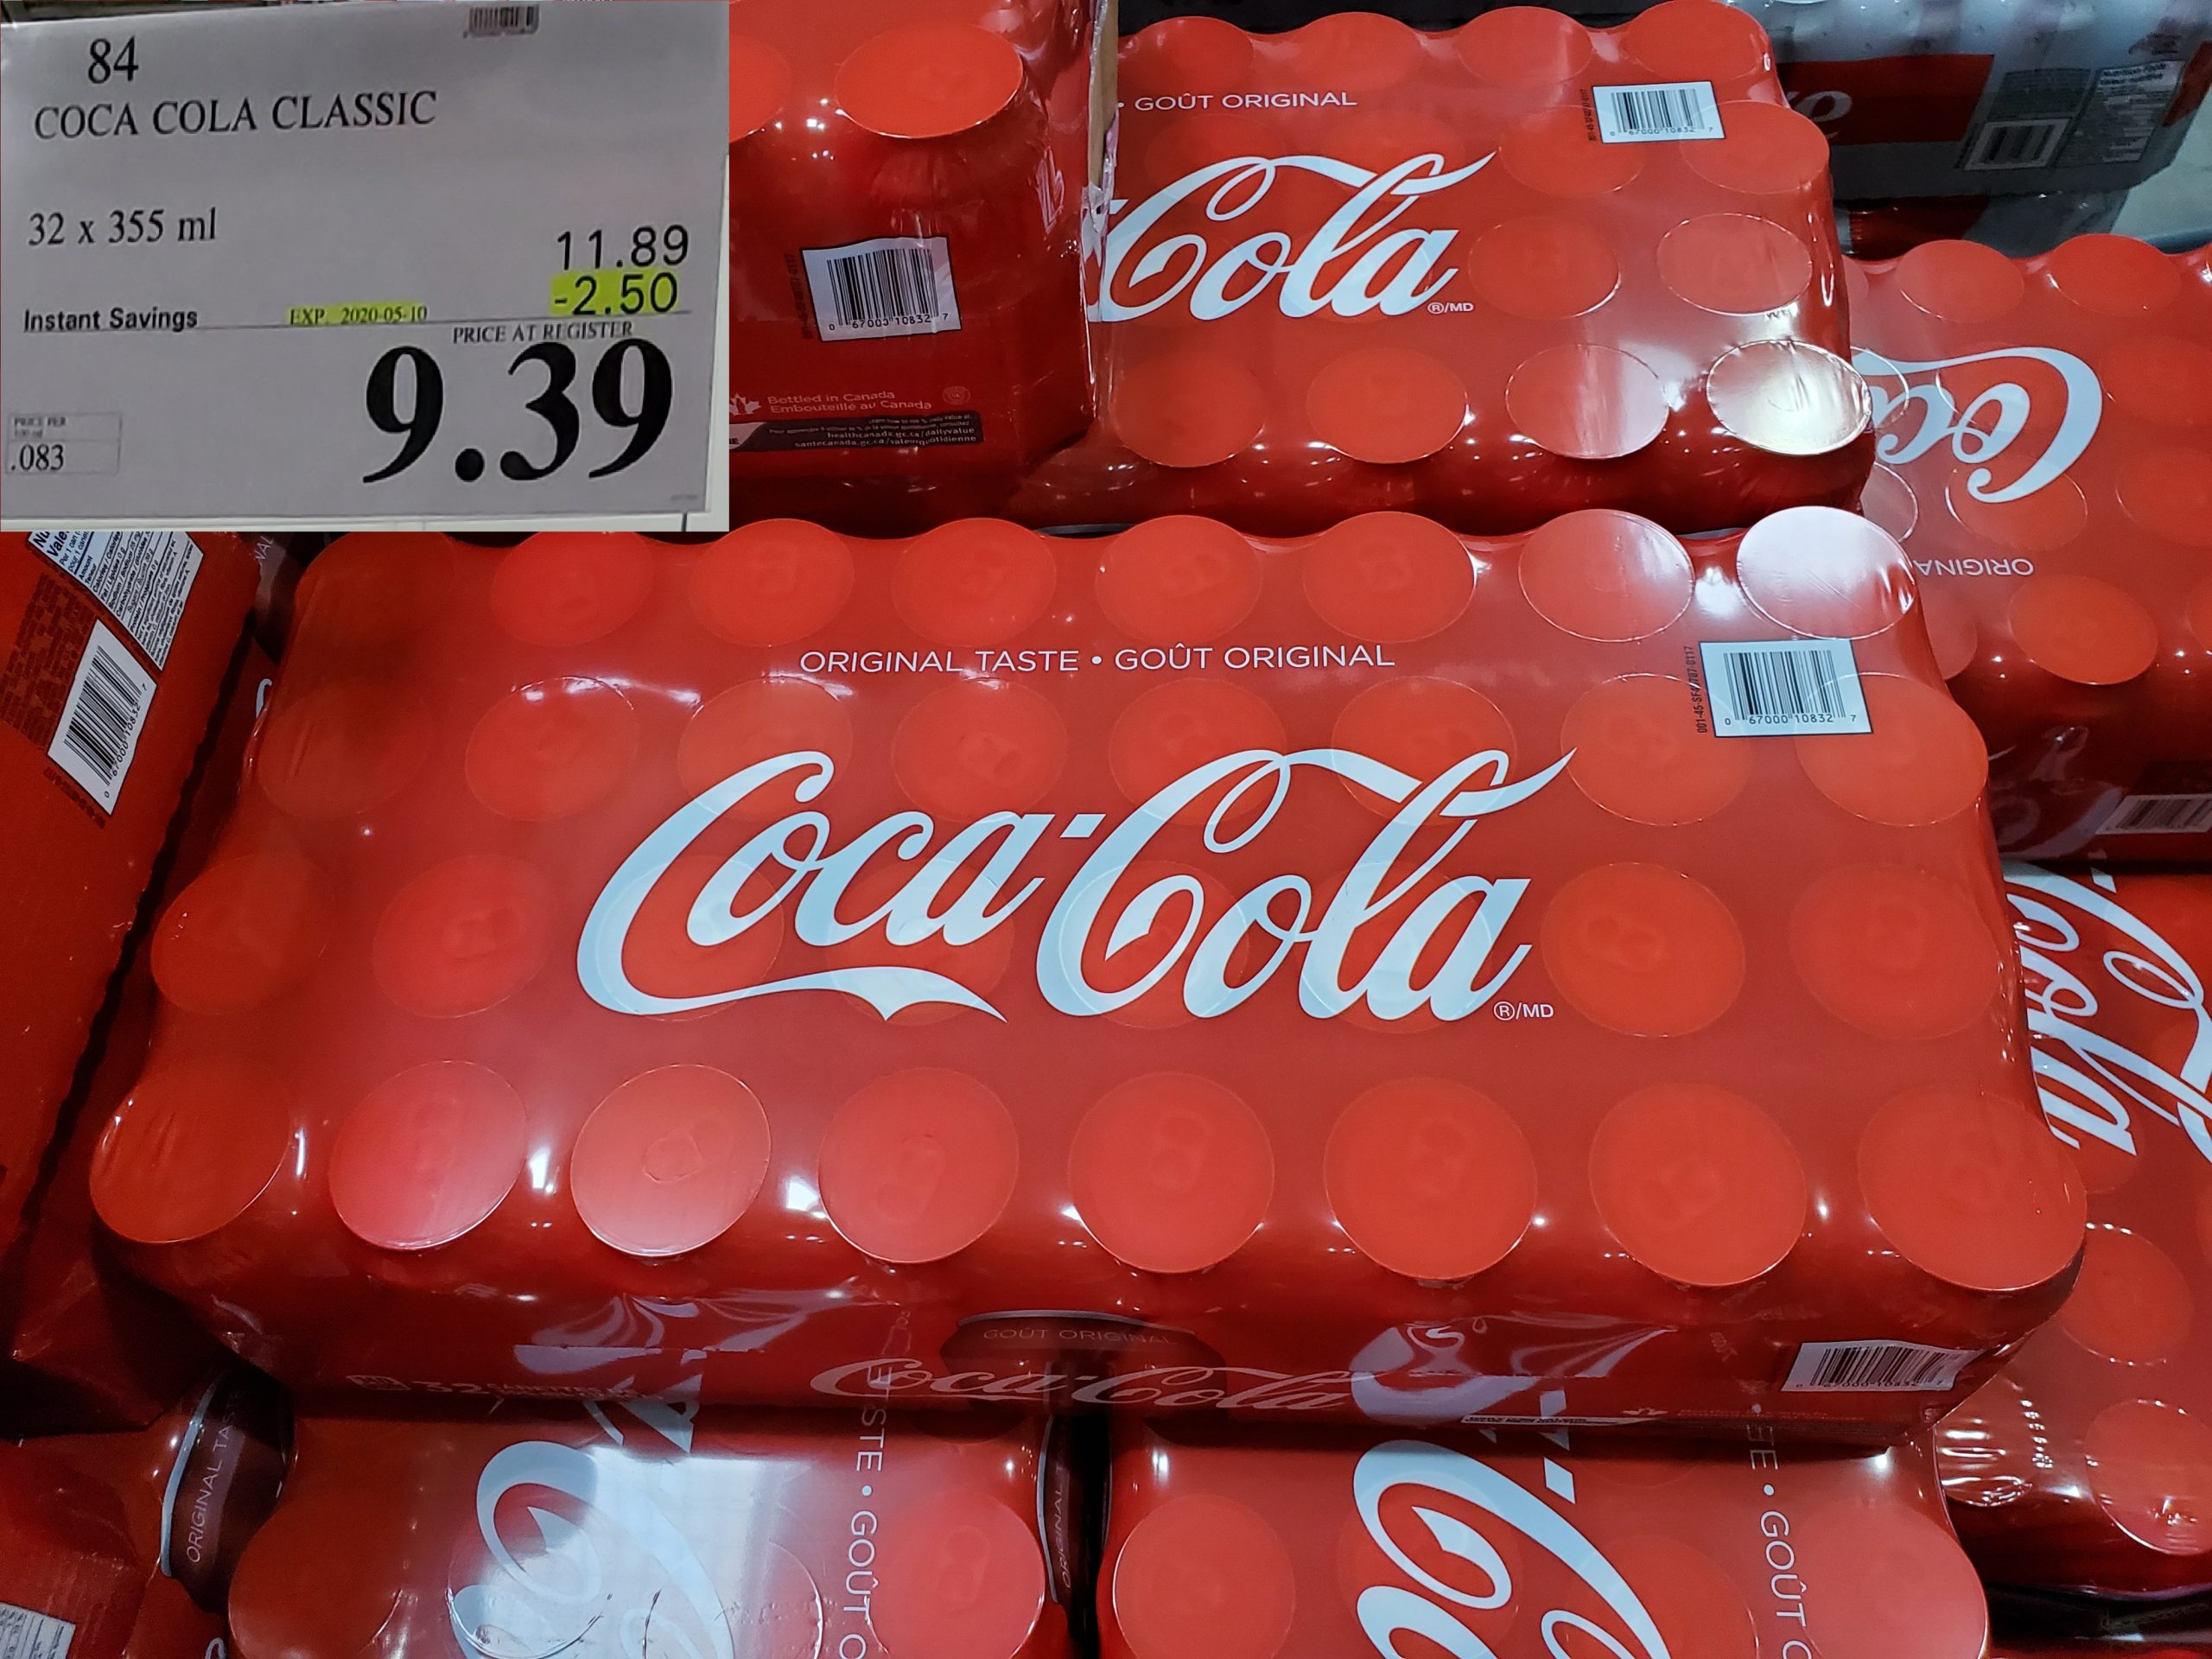 84 Coca Cola Classic 32 X 355 Ml 2 50 Instant Savings Expires On 2020